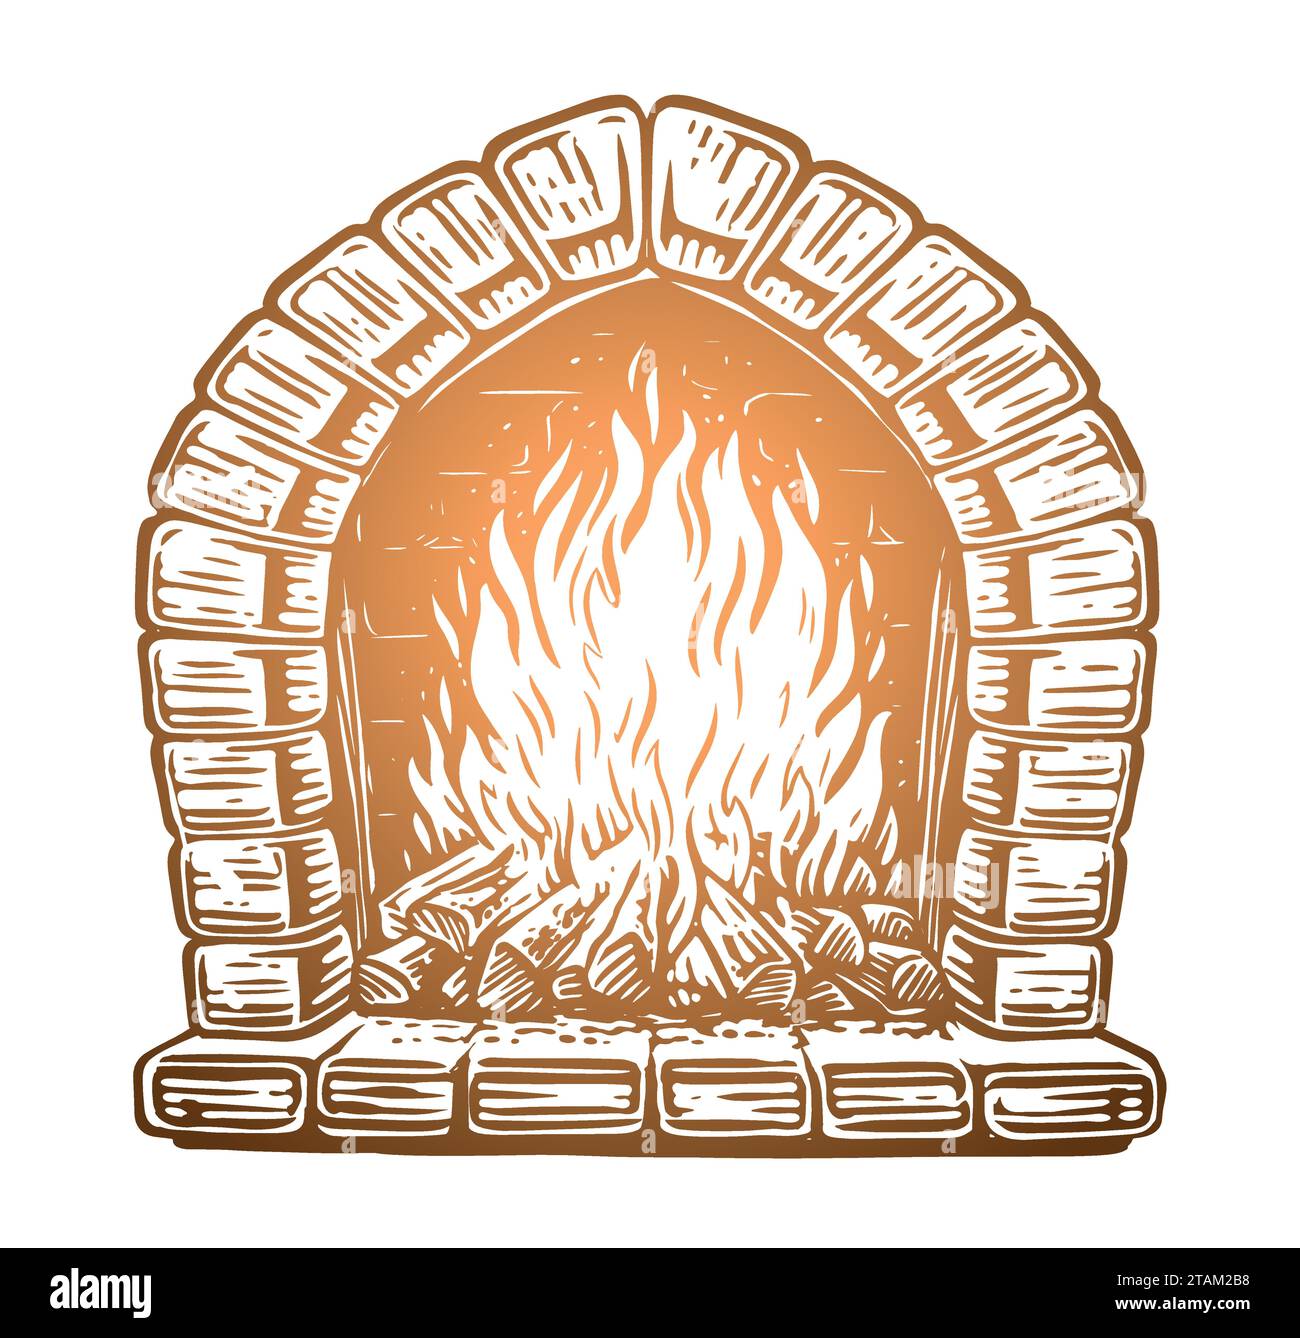 Le bois brûle dans la cheminée. Feu dans un four en pierre. Illustration vectorielle dessinée à la main Illustration de Vecteur